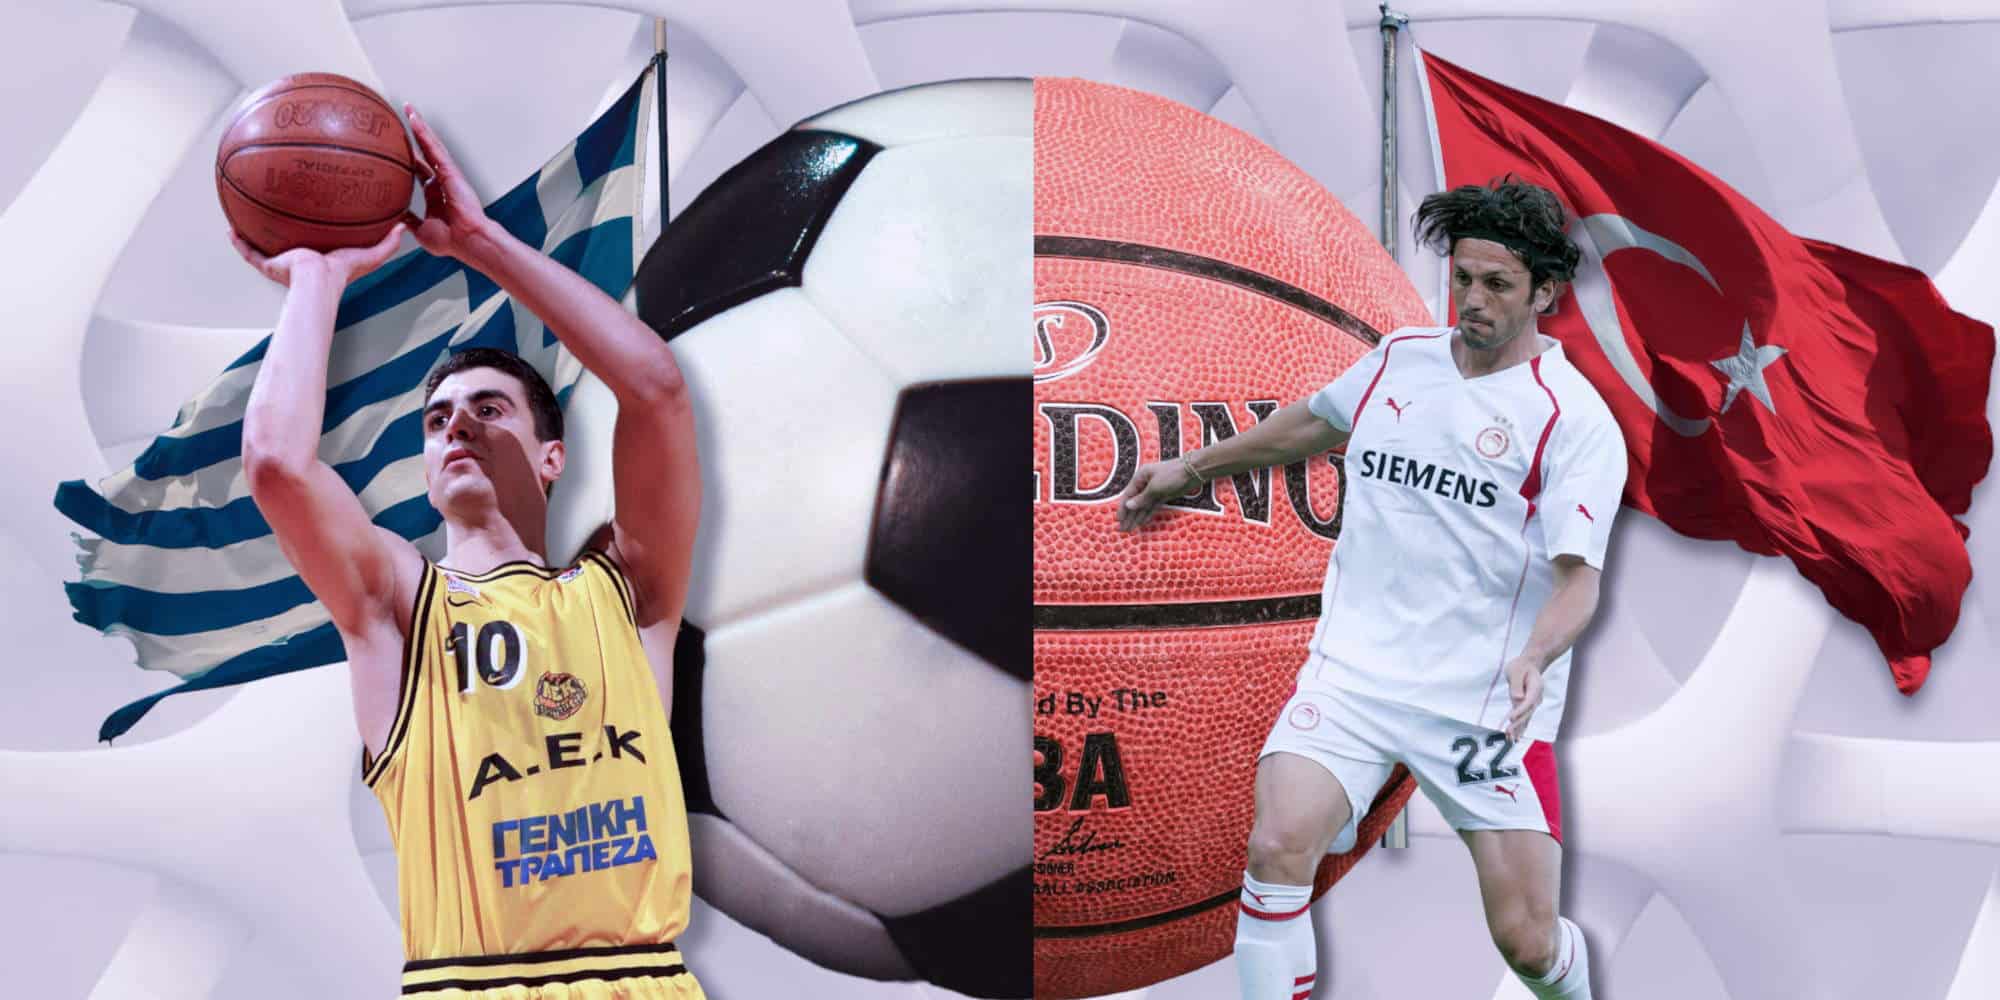 Τούρκοι αθλητές που έχουν αγωνιστεί σε ελληνικές ομάδες στο μπάσκετ και το ποδόσφαιρο